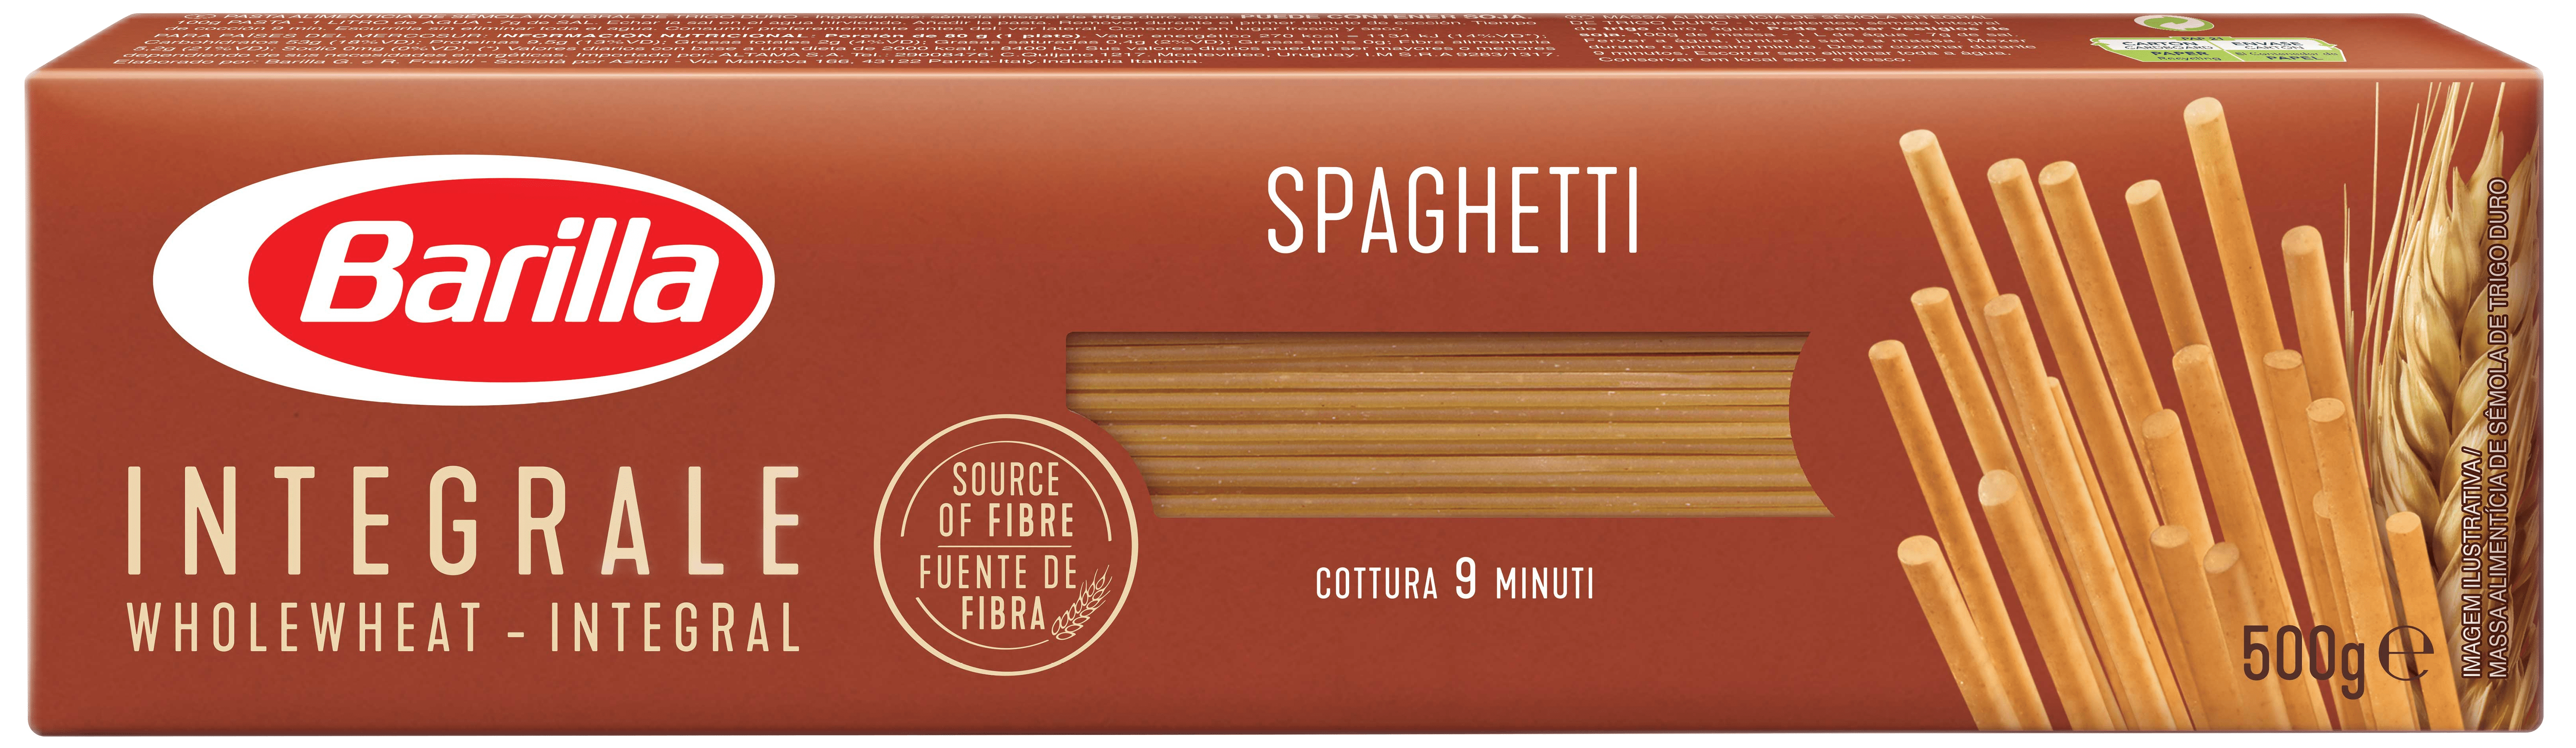 Whole Wheat Spaghetti | Barilla Pasta